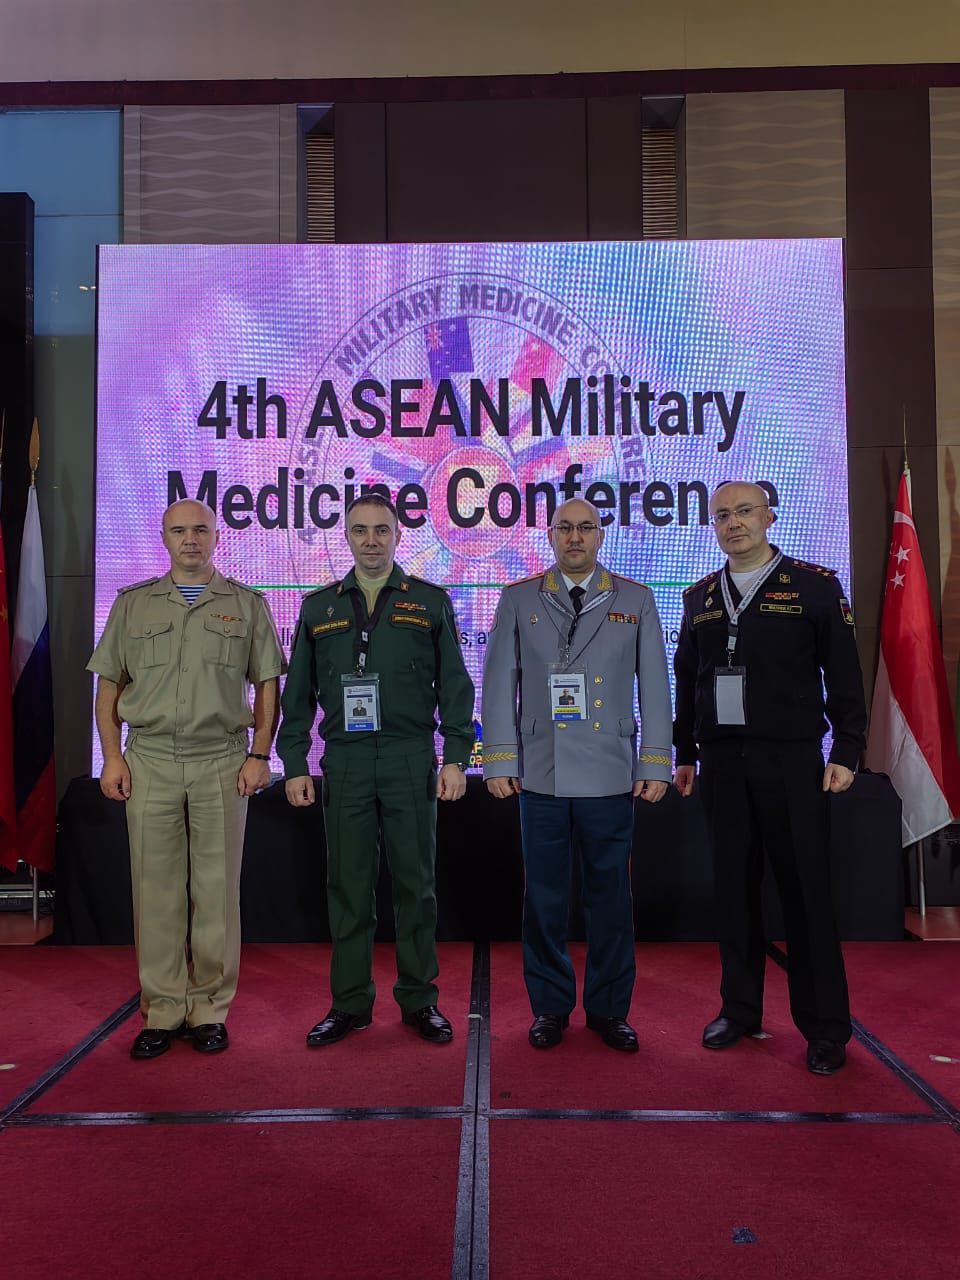 Конференция по военной медицине стран Азиатско-Тихоокеанского региона прошла в Маниле